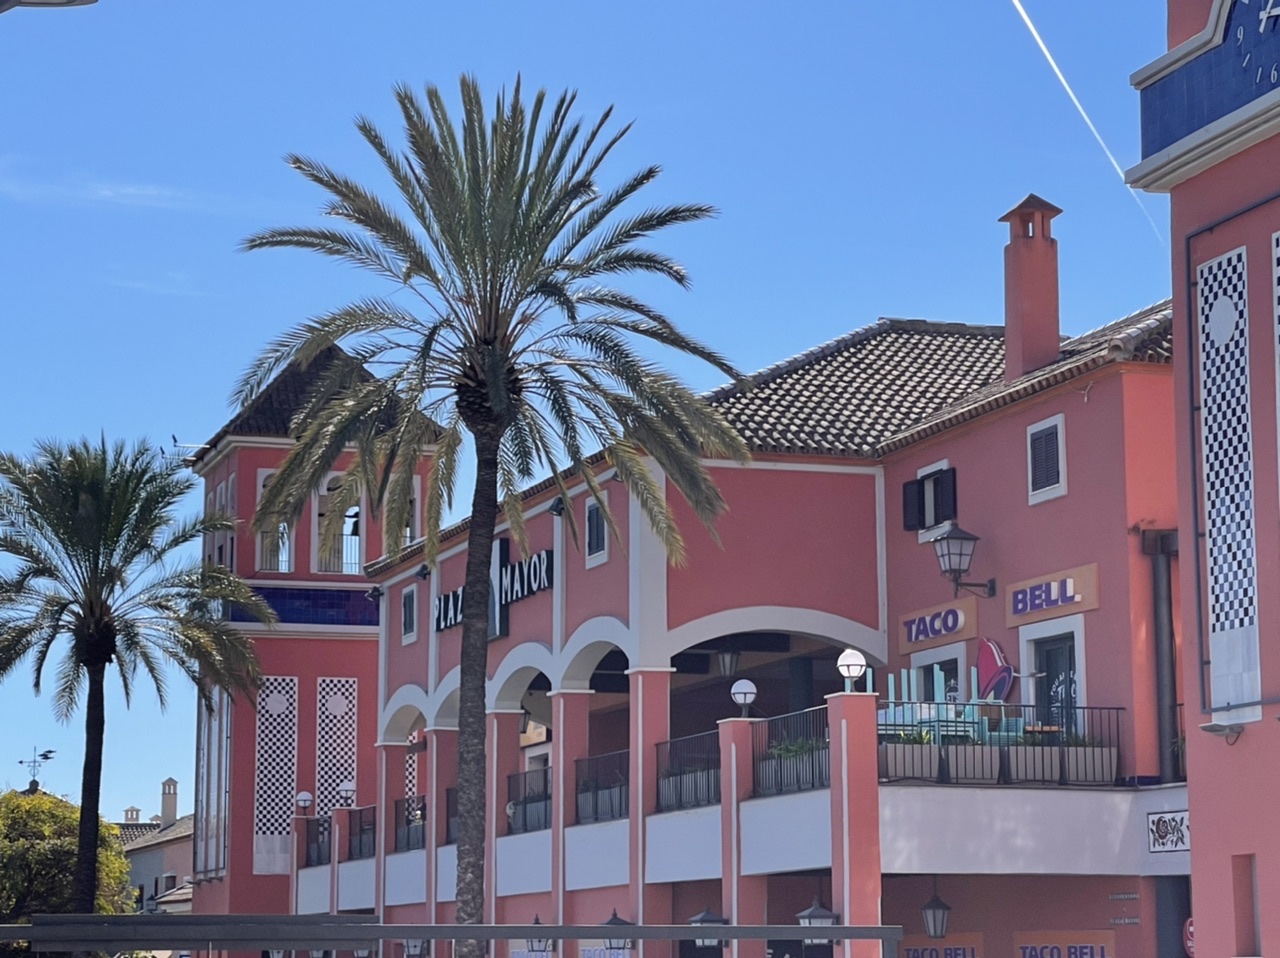 Where to go shopping in Marbella? - Centro Plaza